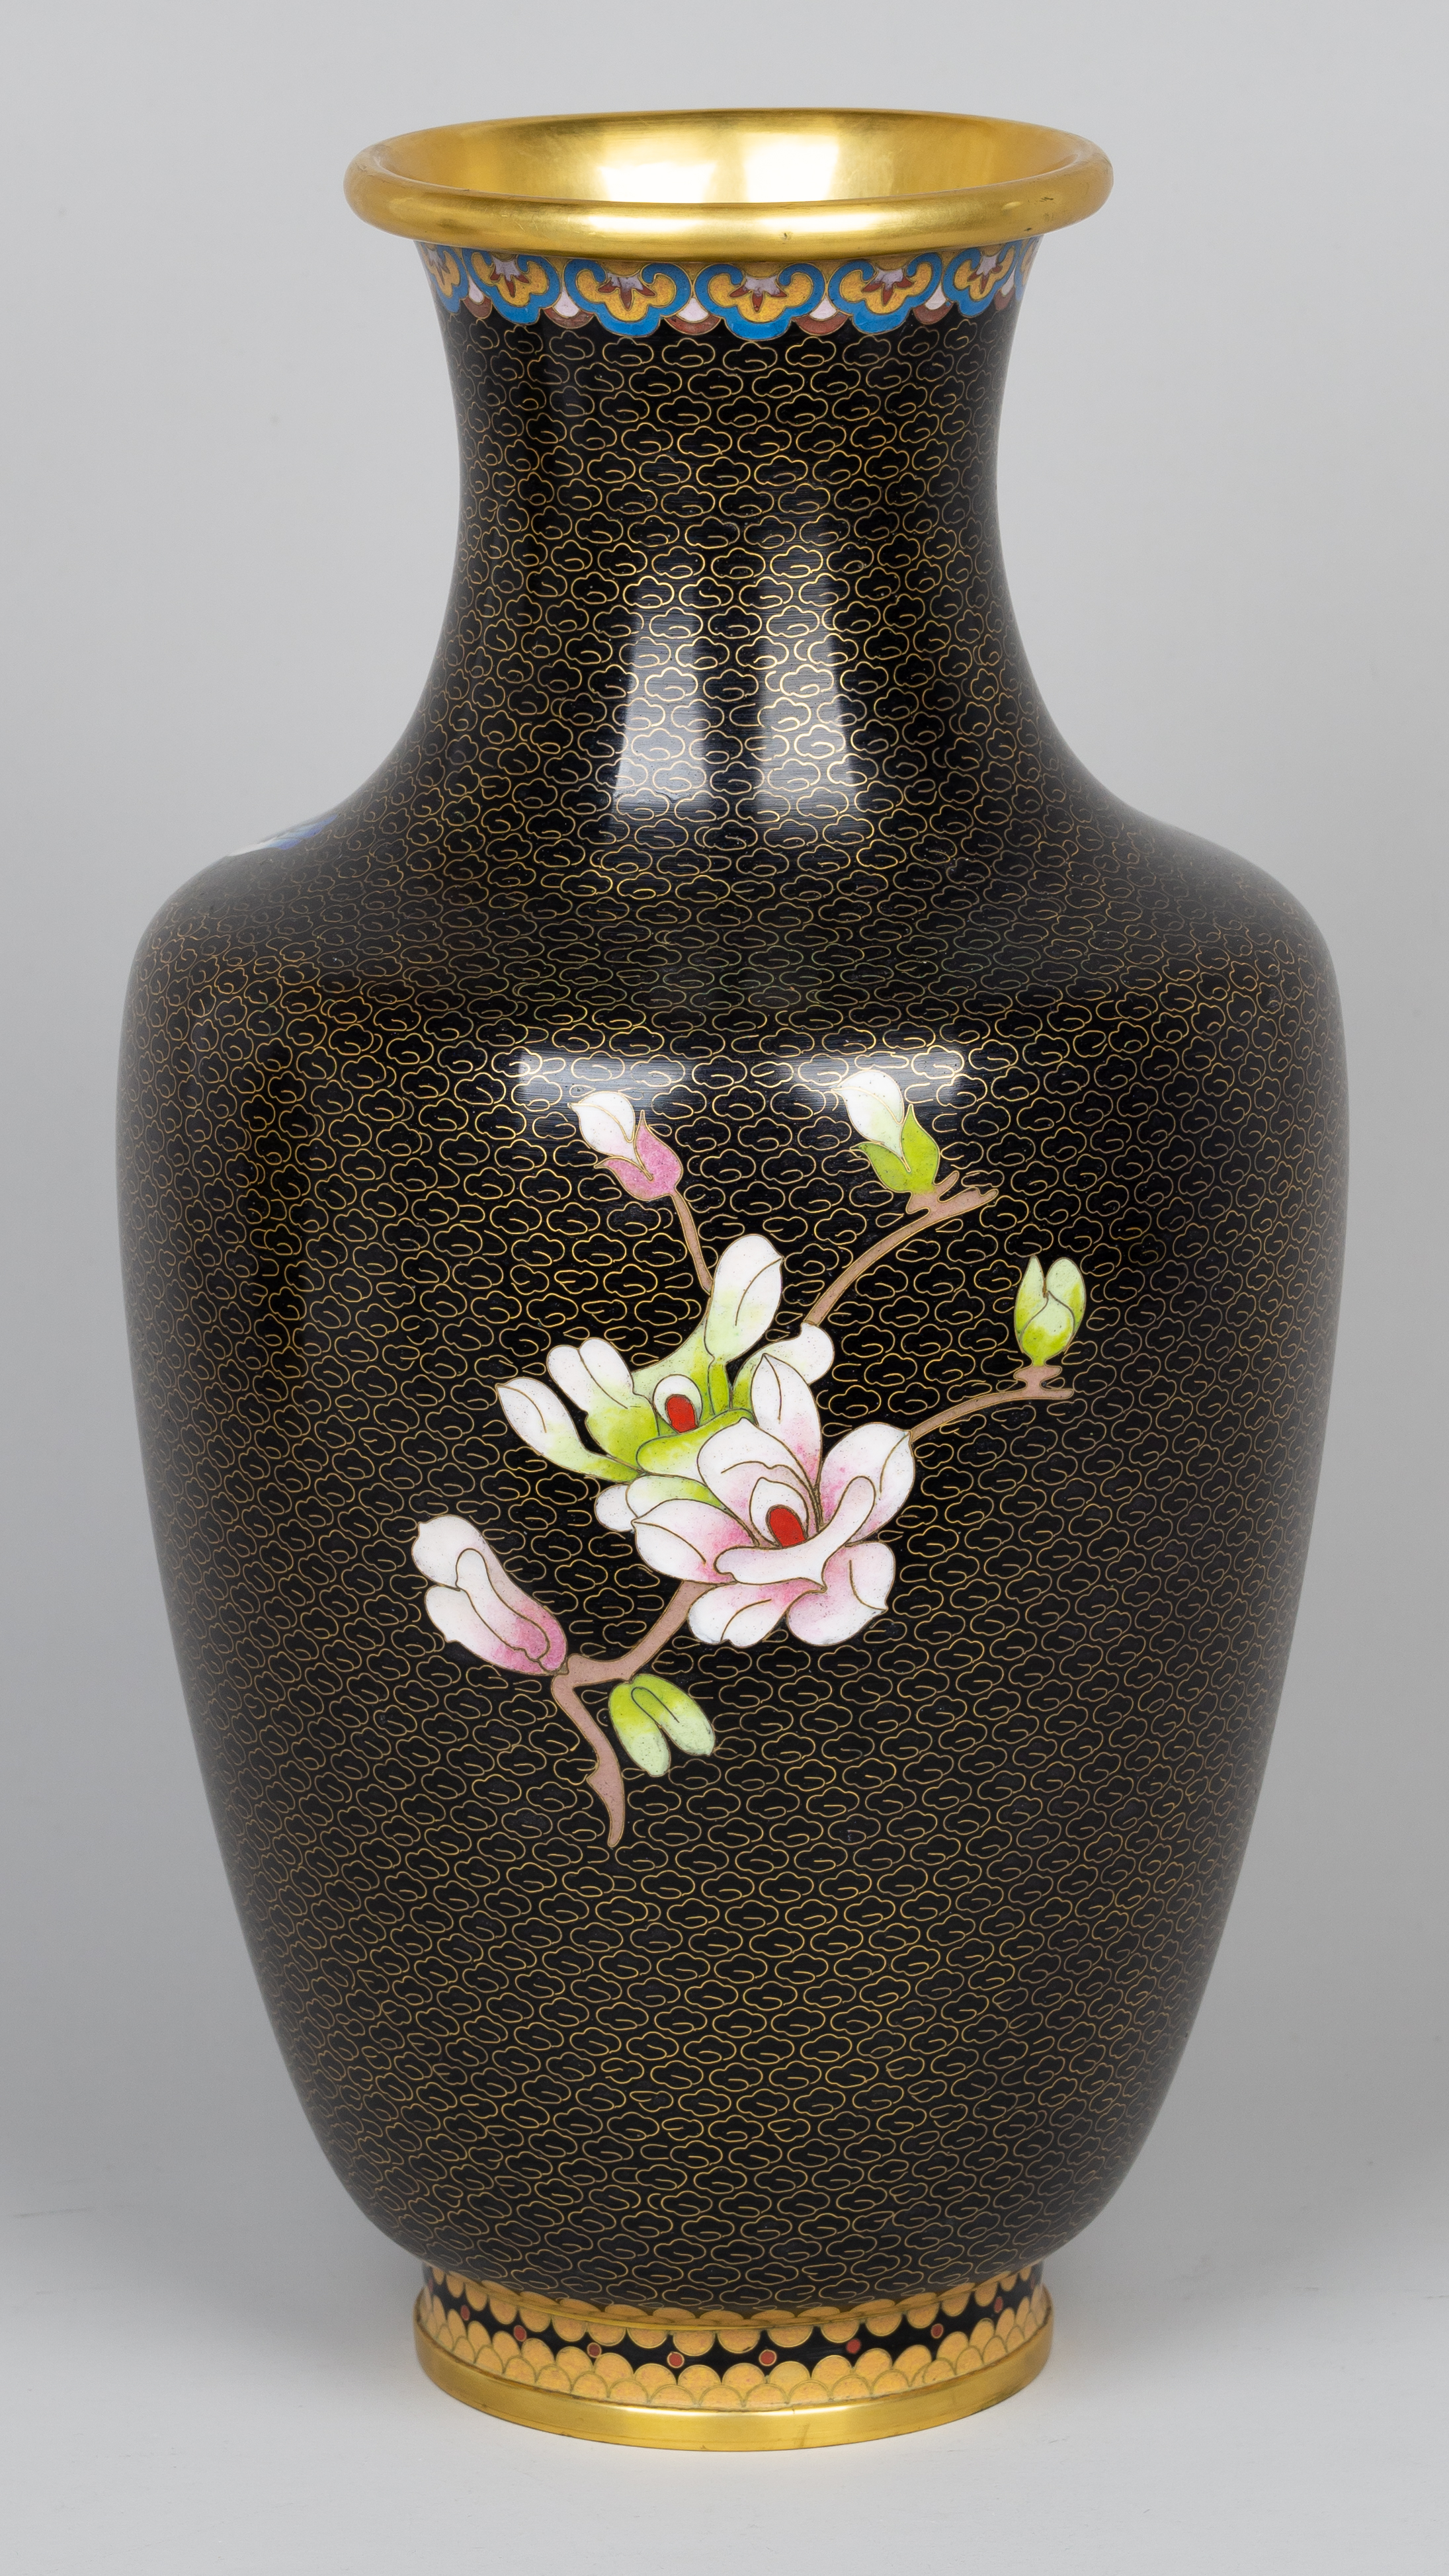 Пара напольных ваз в технике клуазоне с изображением хризантем.<br>Китай, вторая треть ХХ века.